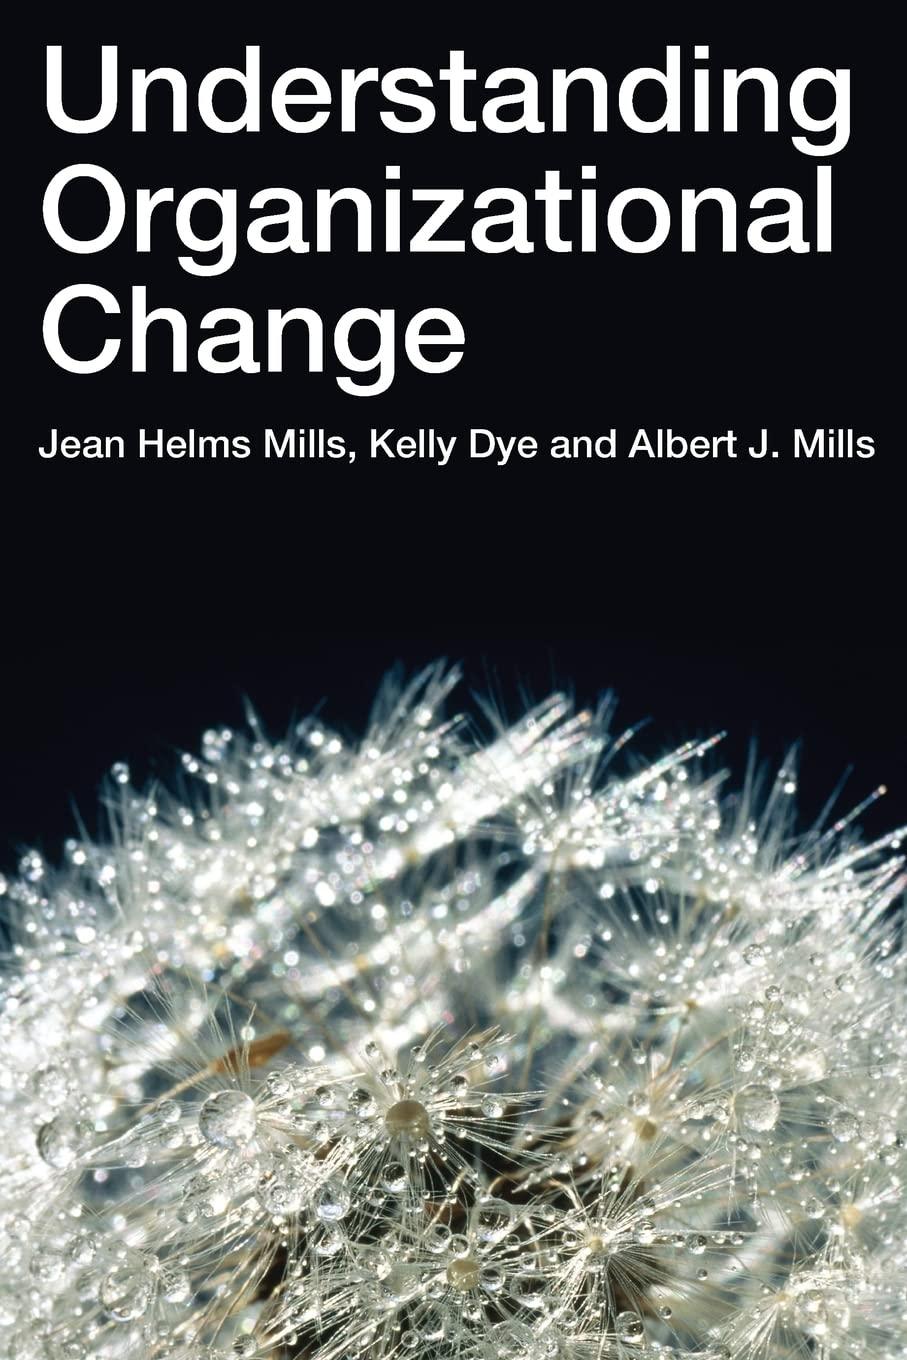 understanding organizational change 1st edition jean helms-mills, kelly dye, albert j mills 041535577x,